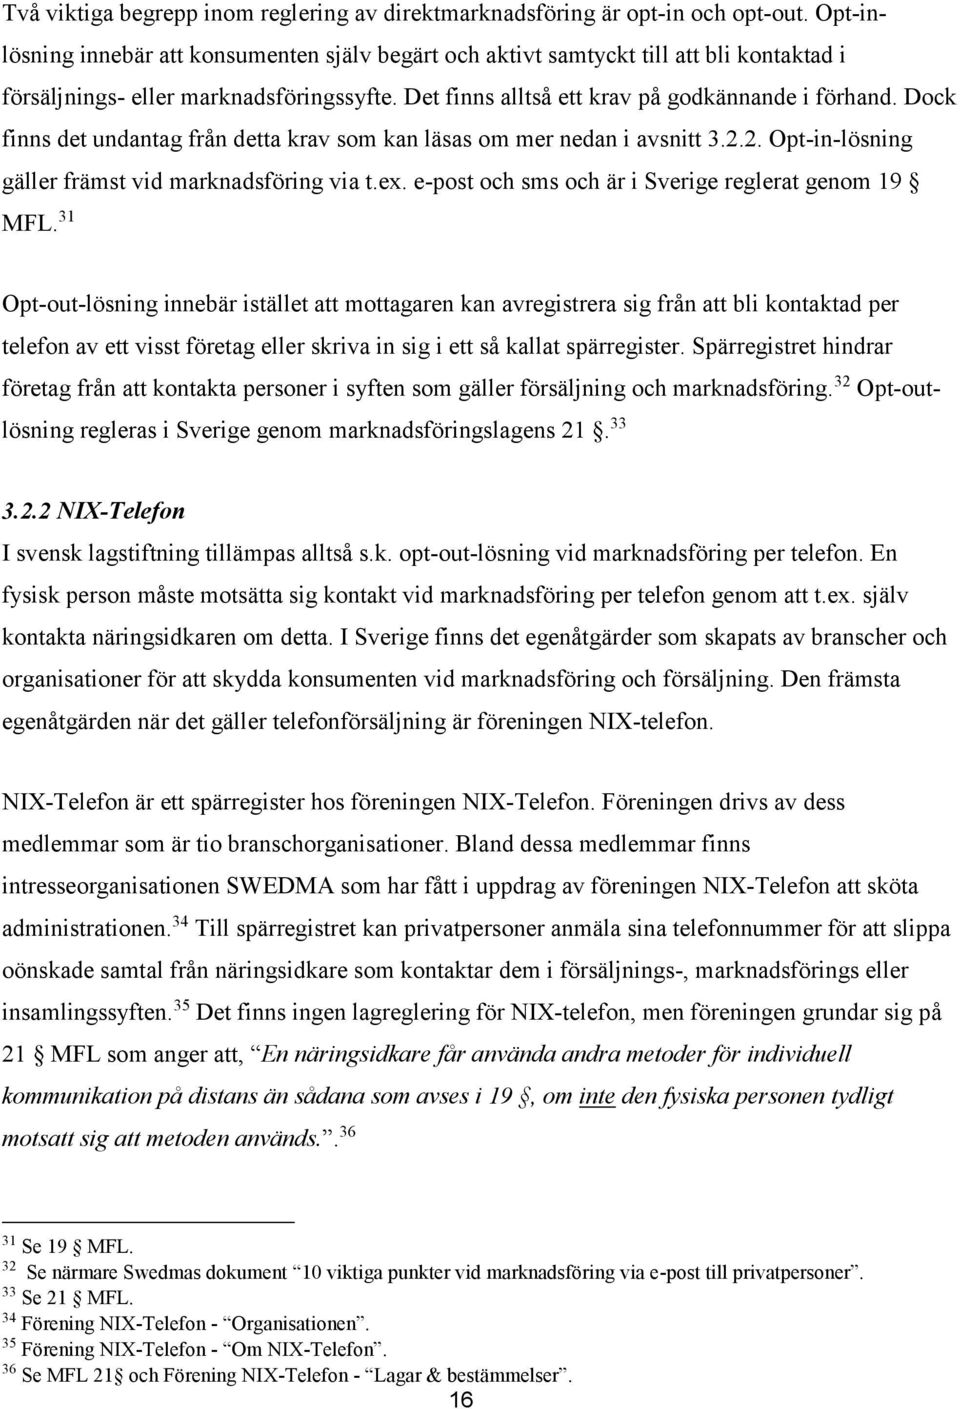 Dock finns det undantag från detta krav som kan läsas om mer nedan i avsnitt 3.2.2. Opt-in-lösning gäller främst vid marknadsföring via t.ex. e-post och sms och är i Sverige reglerat genom 19 MFL.